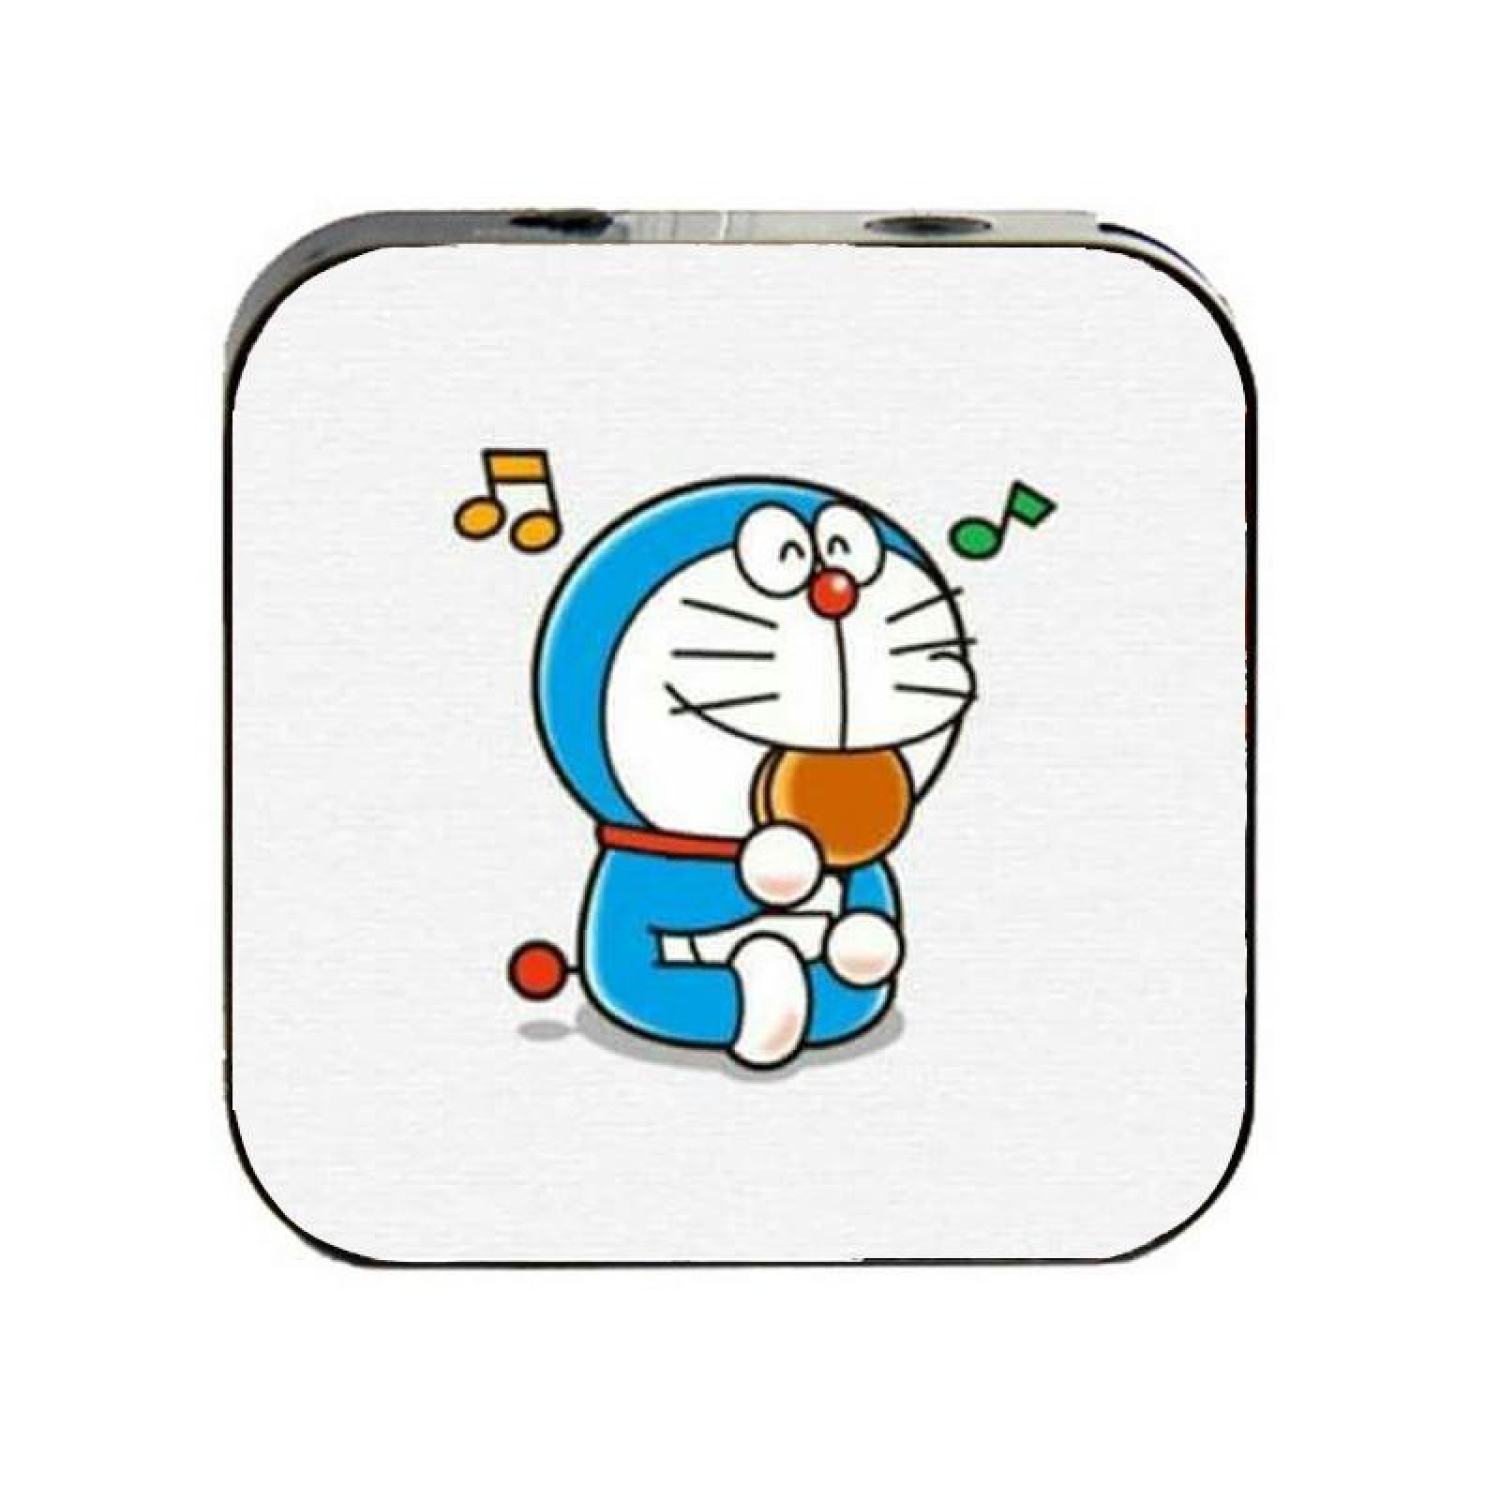 Hãy cùng chiêm ngưỡng những hình ảnh Doraemon và nhân vật chibi dễ thương, đáng yêu trong bộ sưu tập này. Chắc chắn bạn sẽ yêu thích nét đáng yêu của họ!